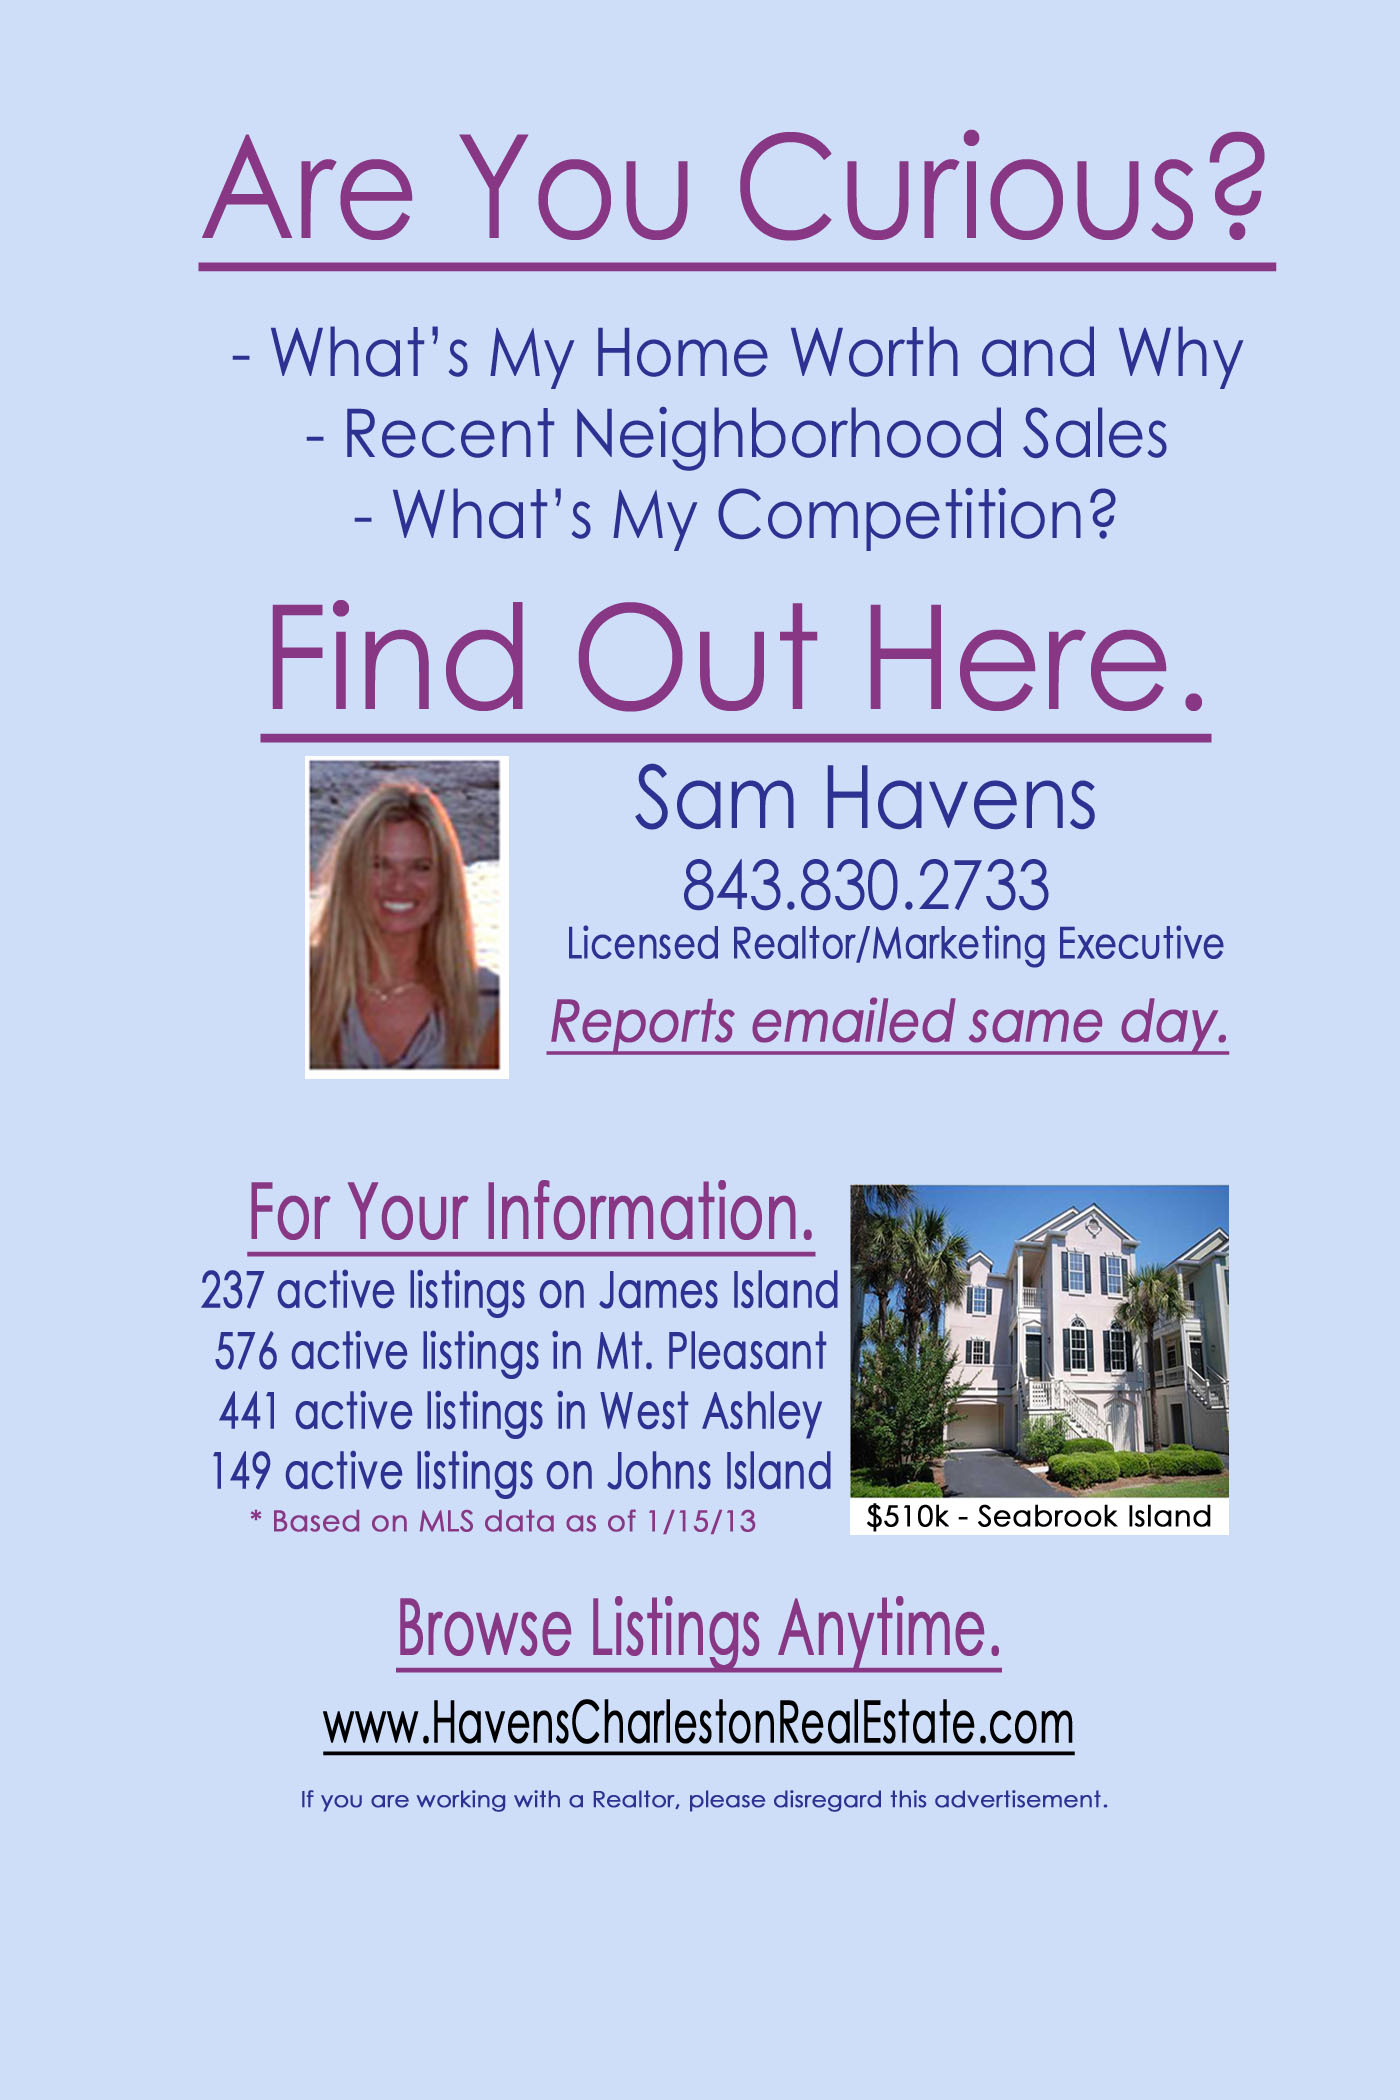 Real Estate Sales in my neighborhood